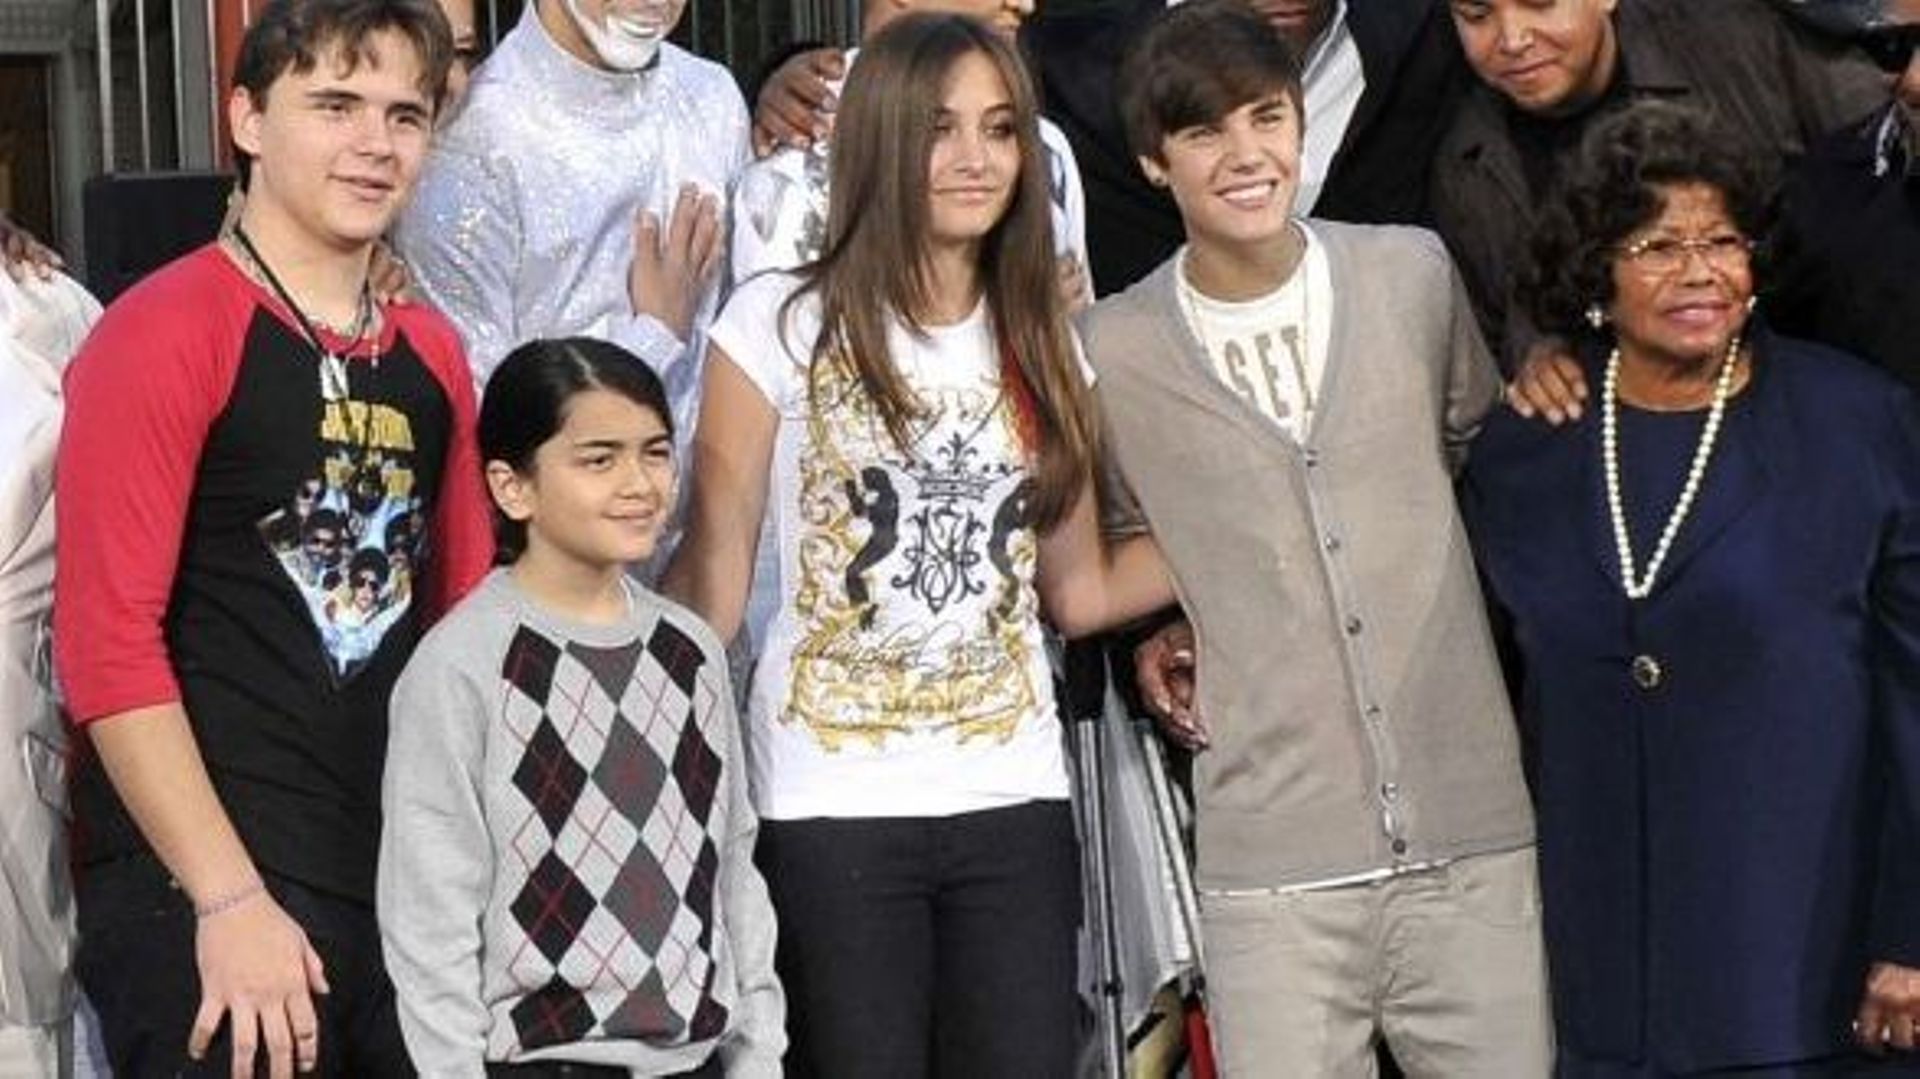 De gauche à droite: Prince Michael, Blanket, Paris, Justin Bieber, Katherine Jackson